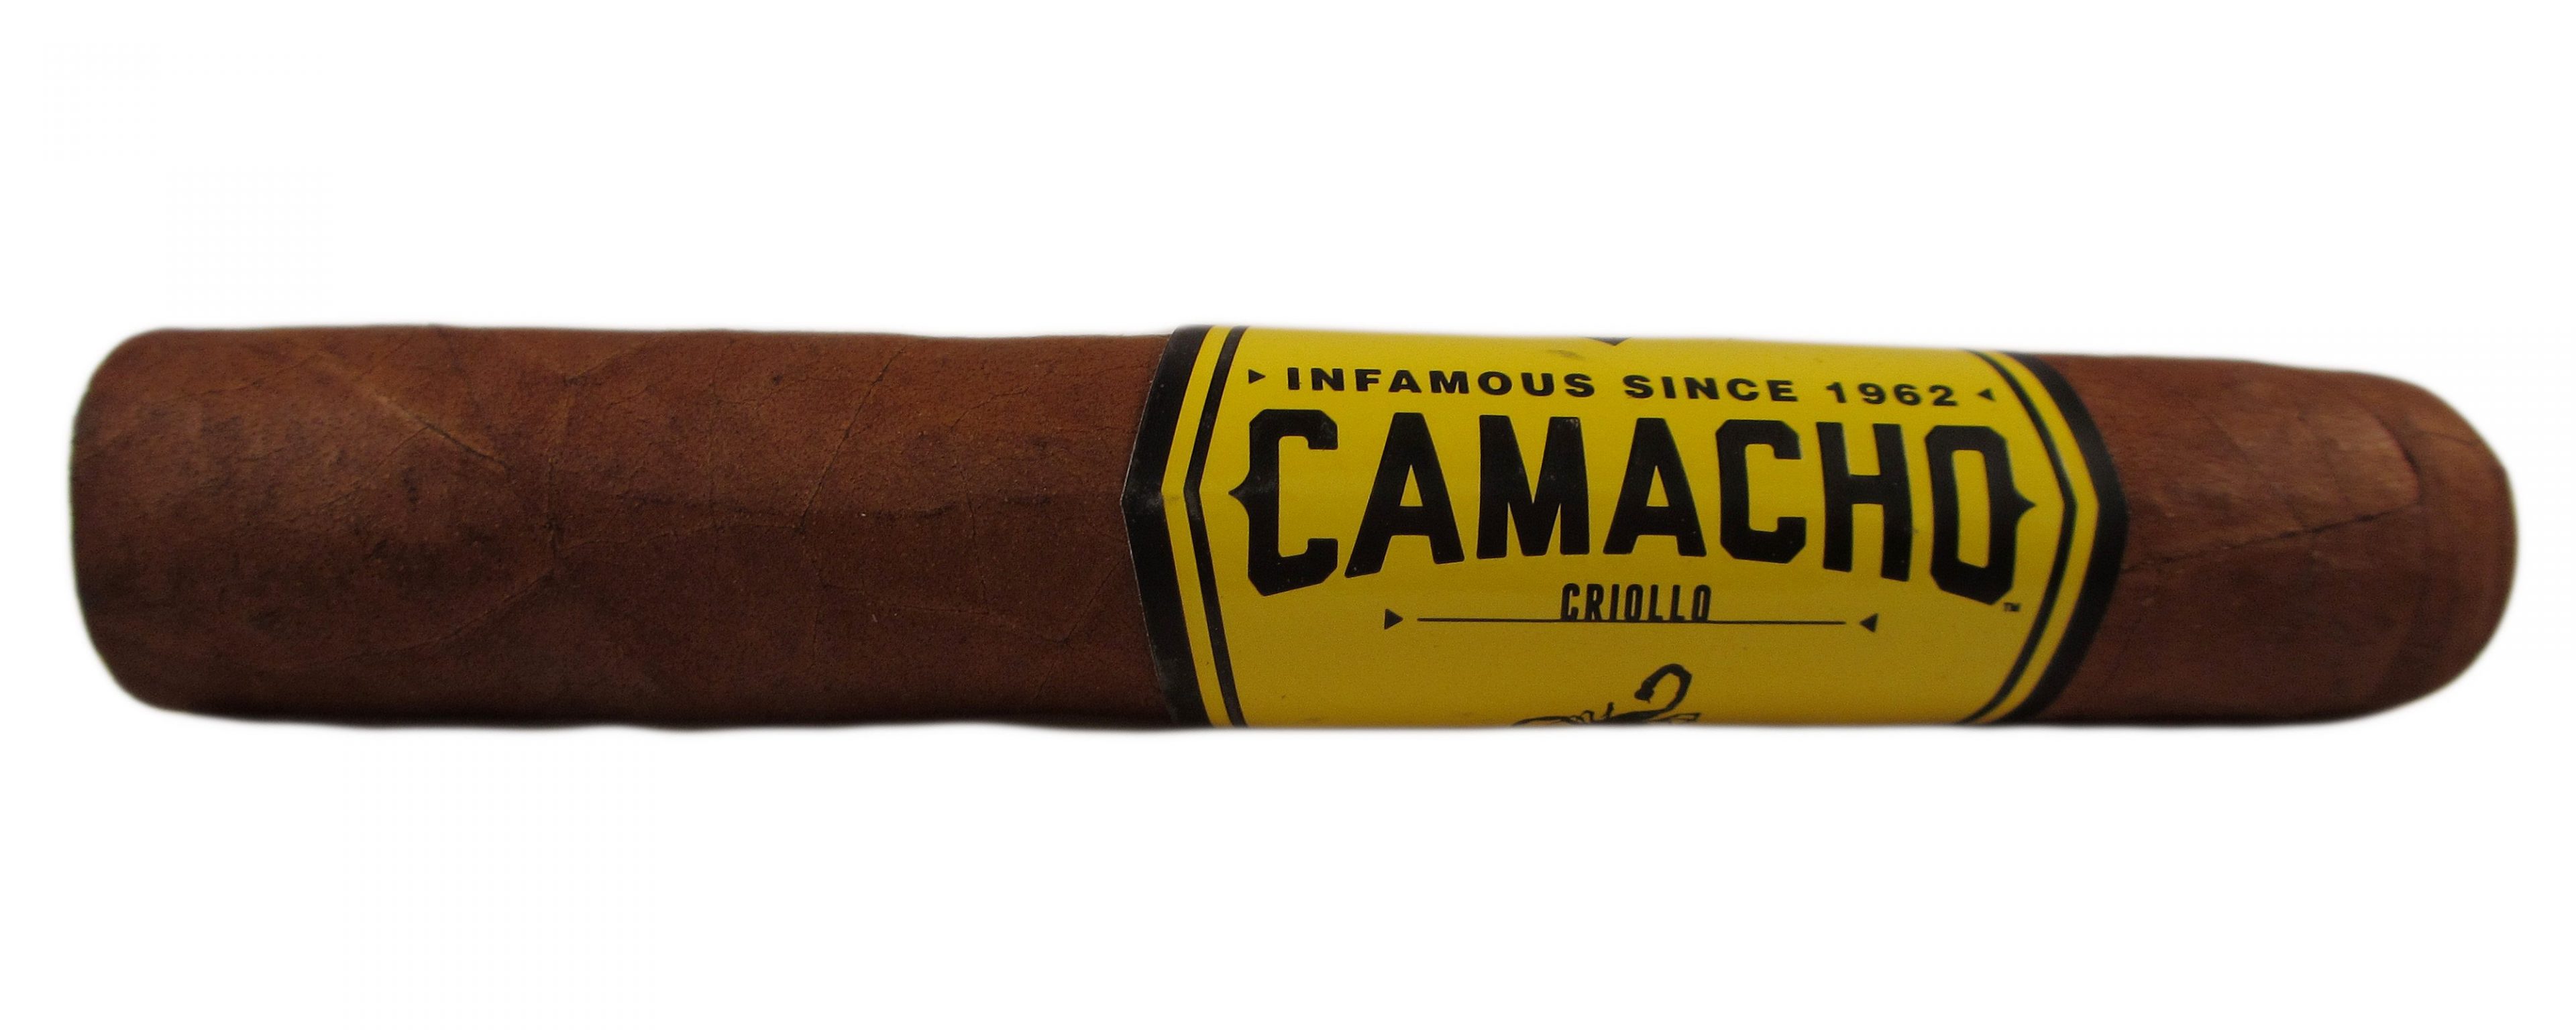 Blind Cigar Review: Camacho | Criollo Robusto